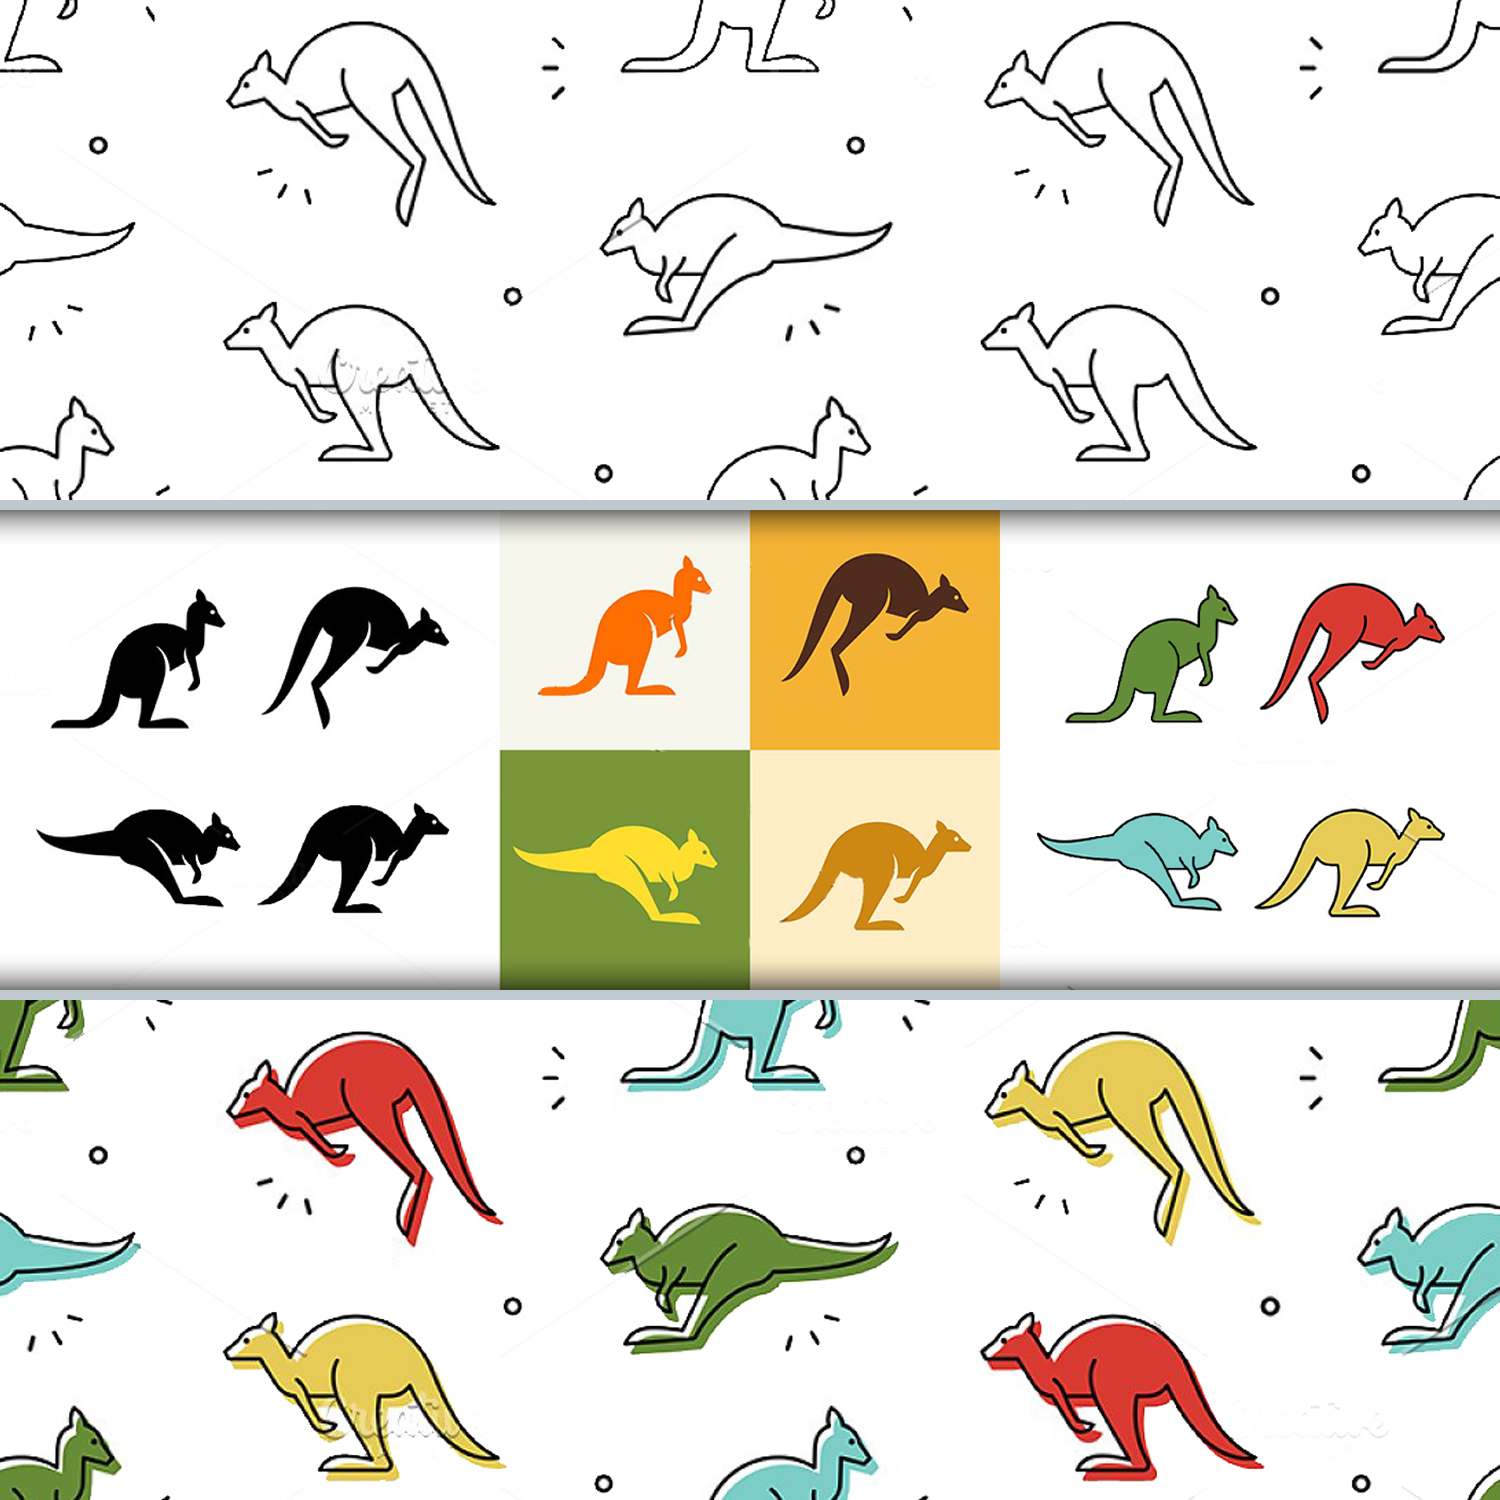 Kangaroo Set + pattern.